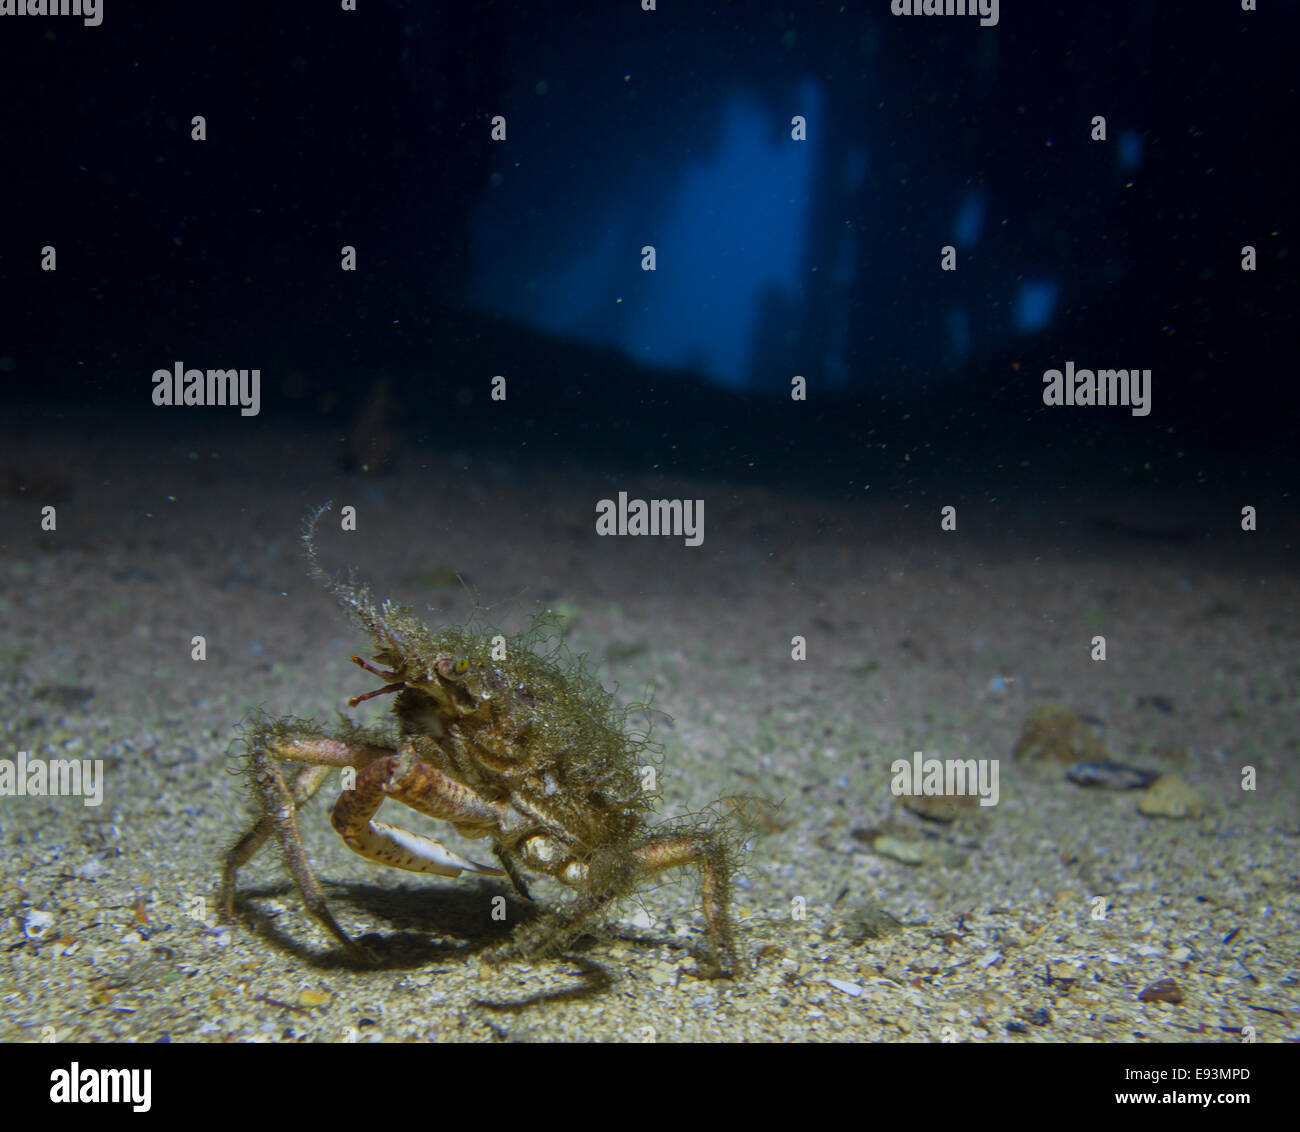 European Spider crab, Maja squinado, in the HMS Maori wreck in the Mediterranean Sea, Valletta, Malta. Stock Photo